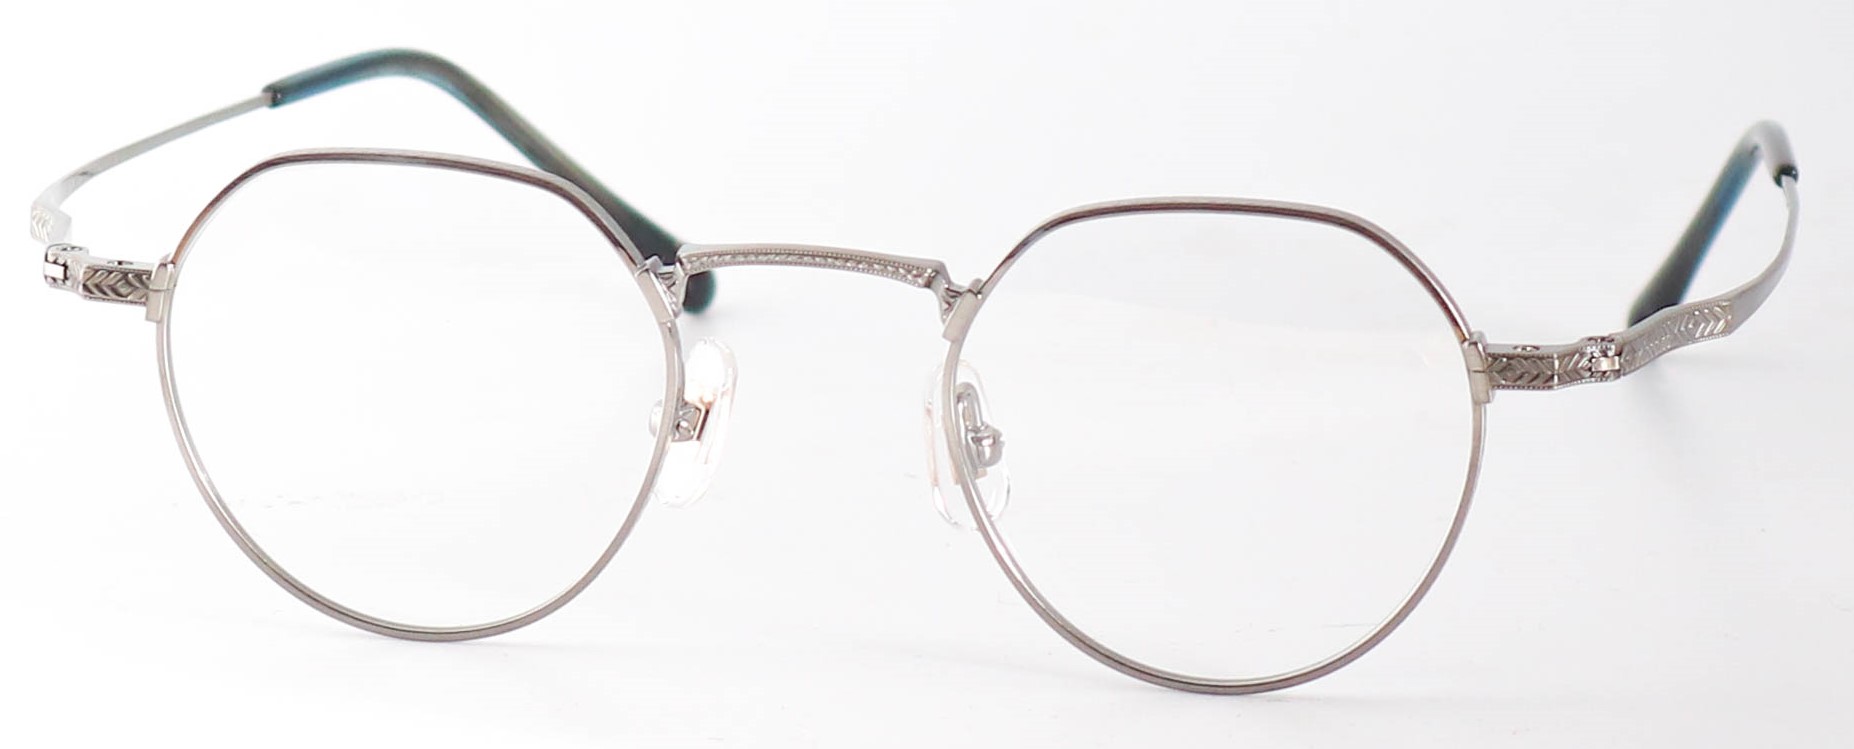 眼鏡のカラータイプC-4 At-Silver